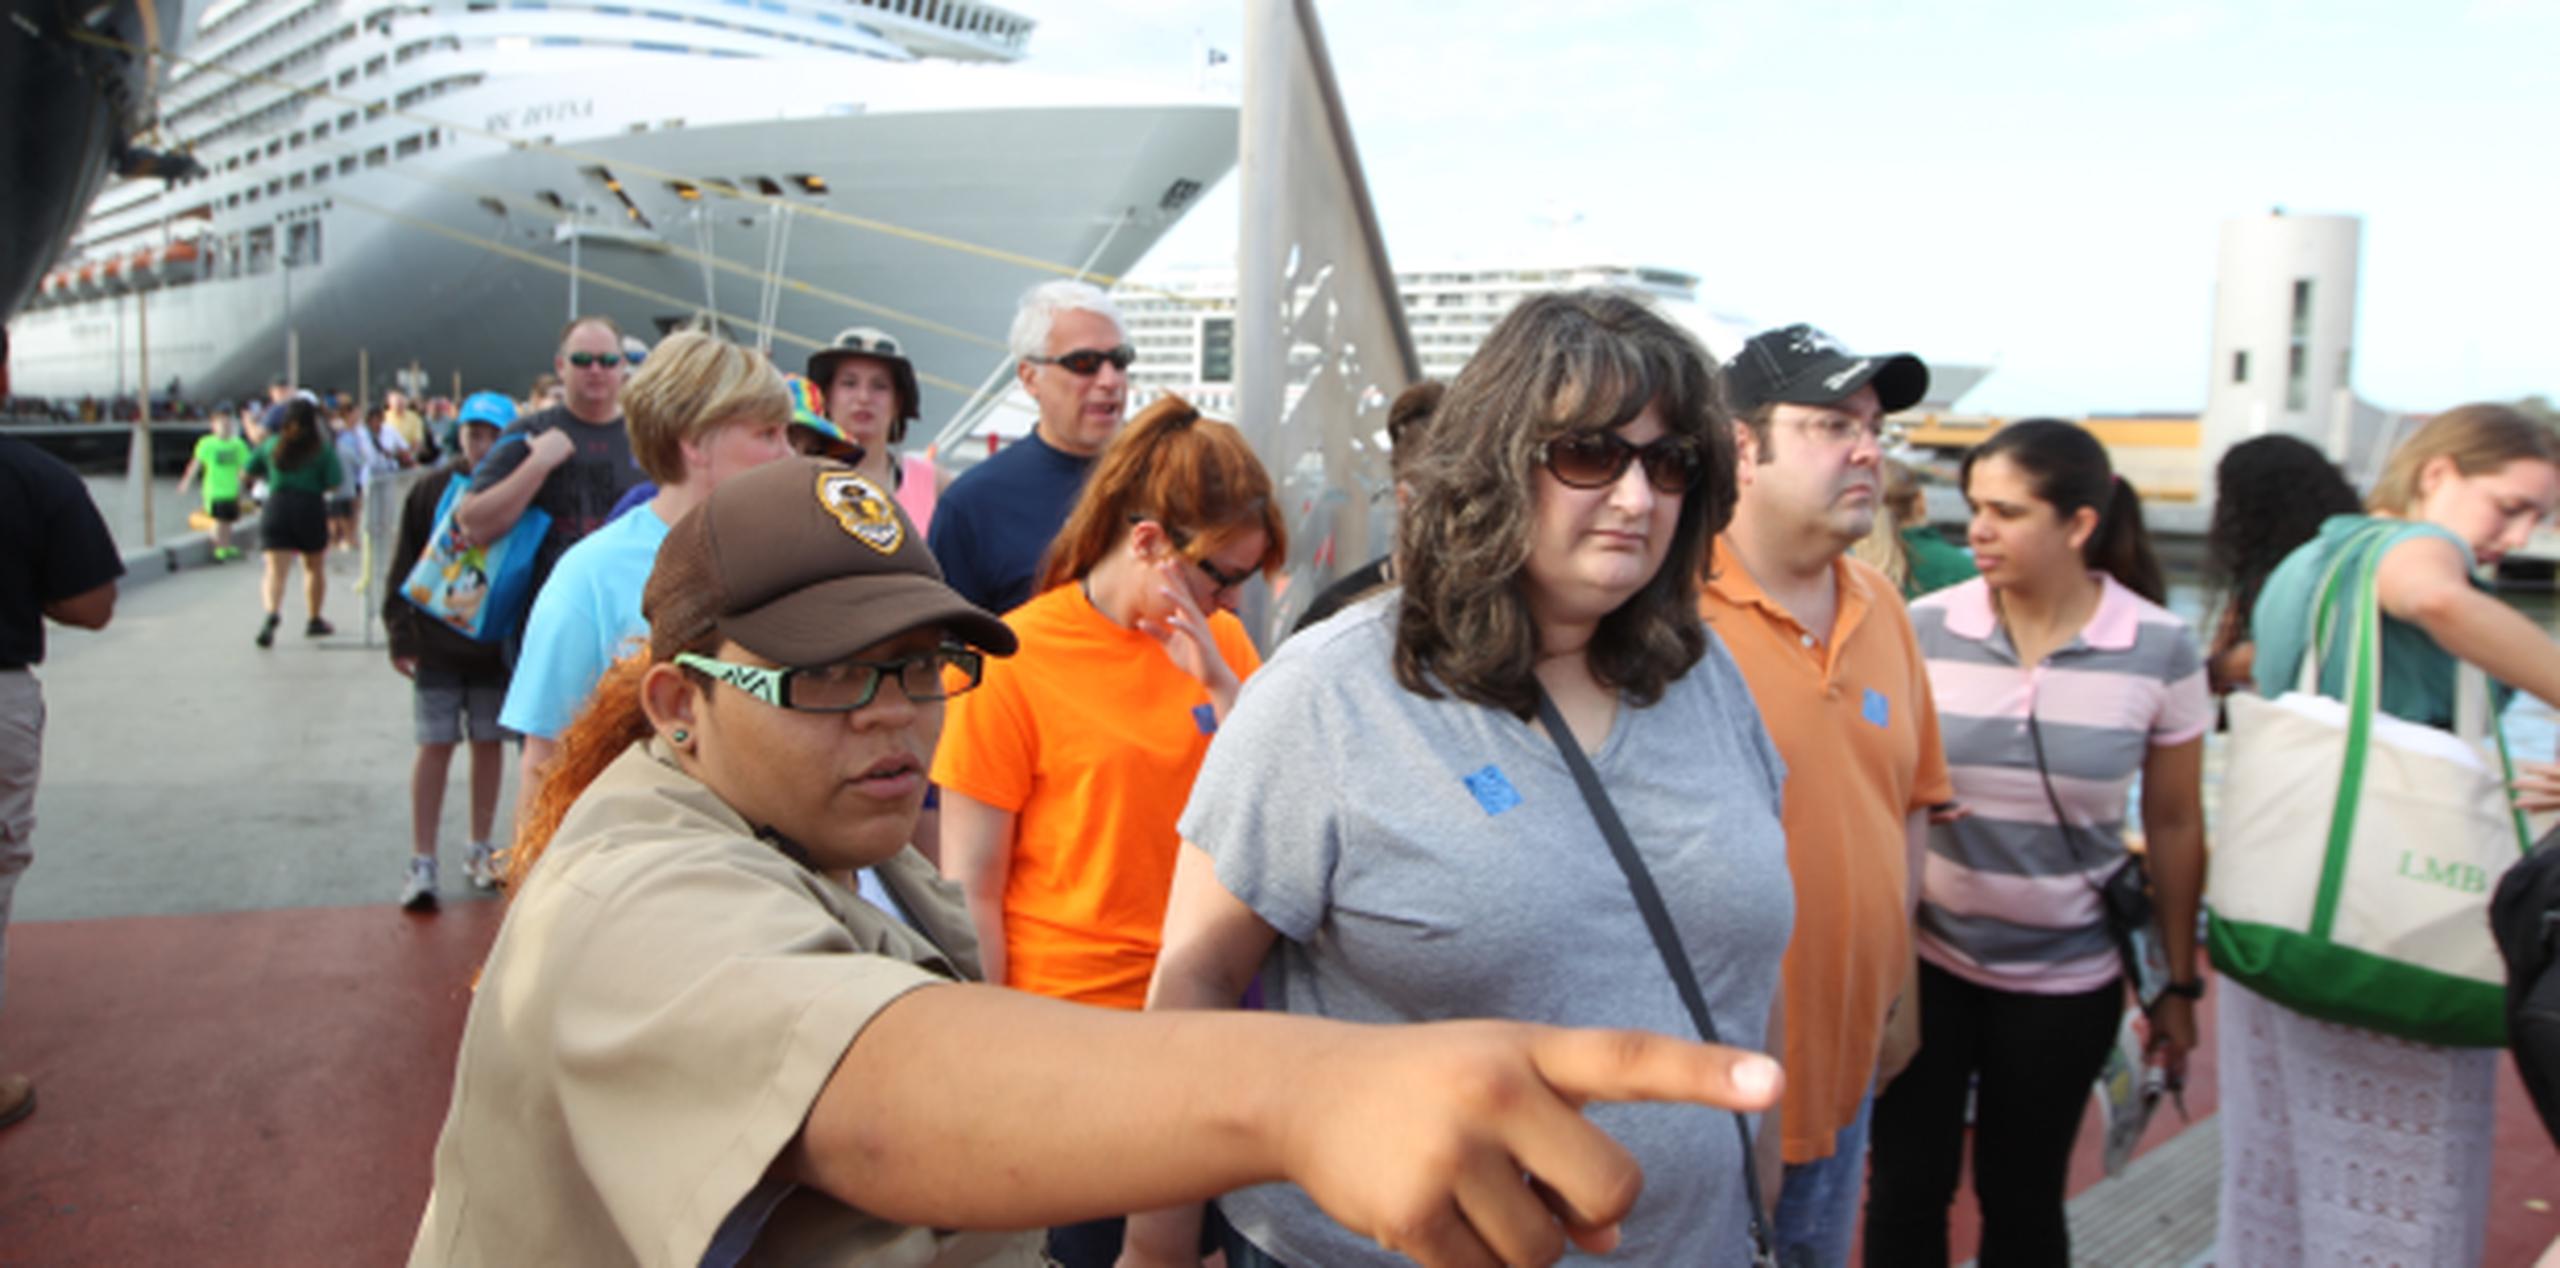 Diciembre de 2014 cierra con el récord de más visitantes que llegan en cruceros en un solo mes a Puerto Rico con sobre 200,000 pasajeros. (alex.figueroa@gfrmedia.com)